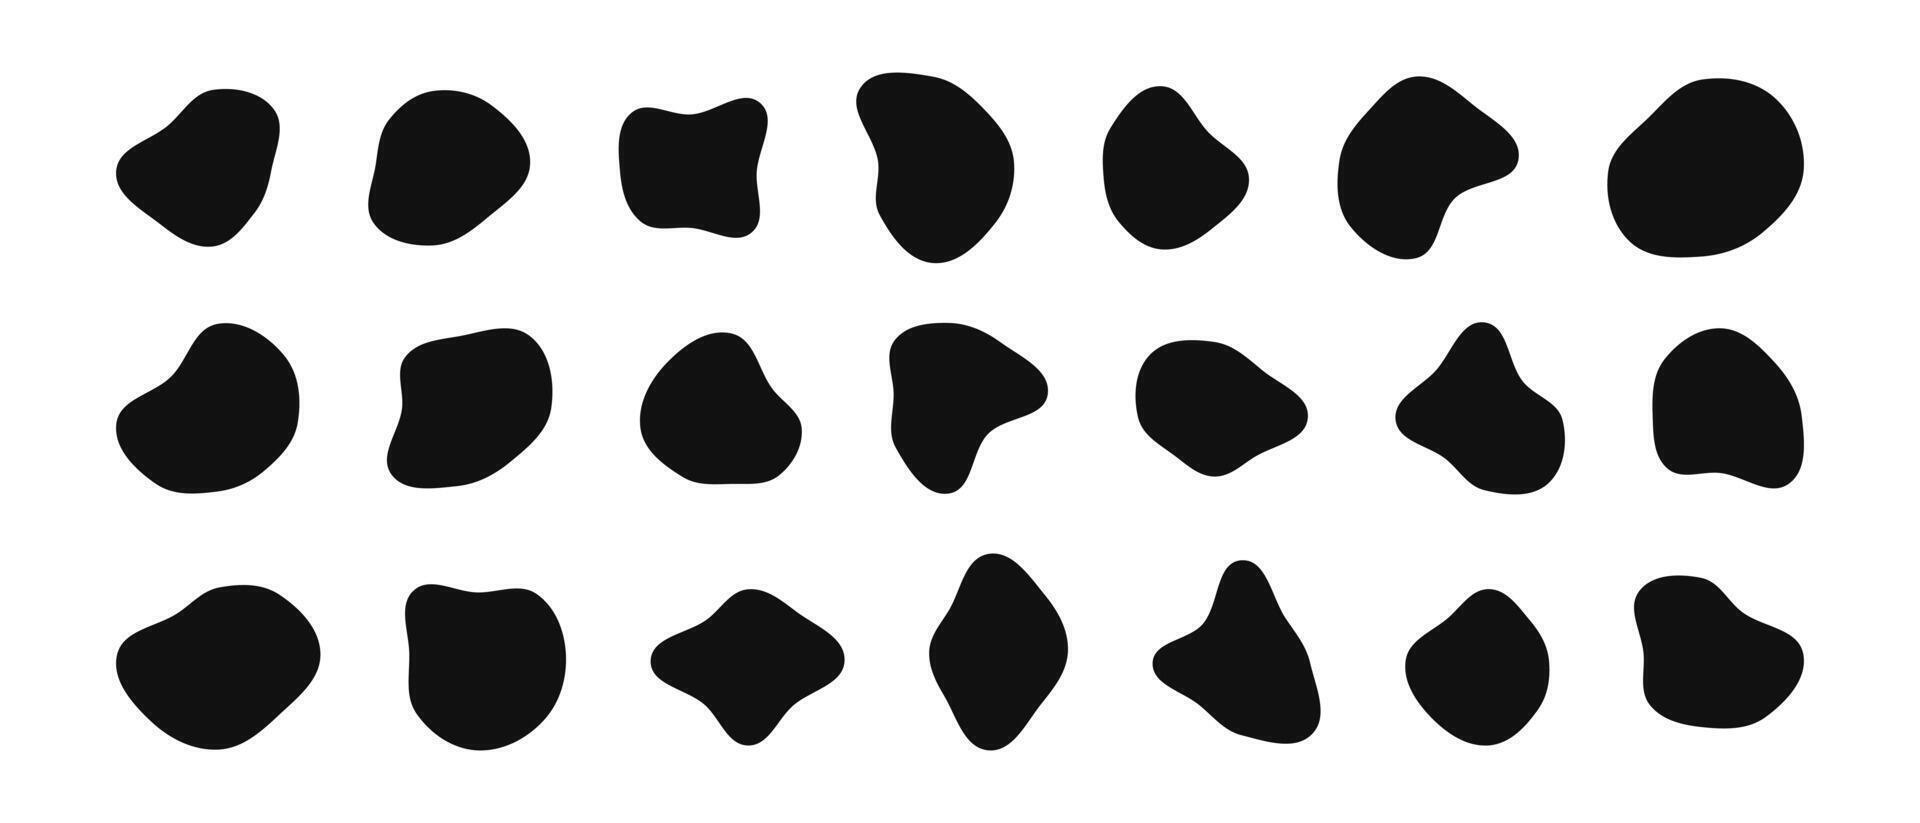 Klecks Formen sind organisch. Freiform irregulär Zahlen. zufällig fließend Flüssigkeit Kreise. Silhouette Steine. Sammlung von isoliert Vektor Elemente auf Weiß Hintergrund.